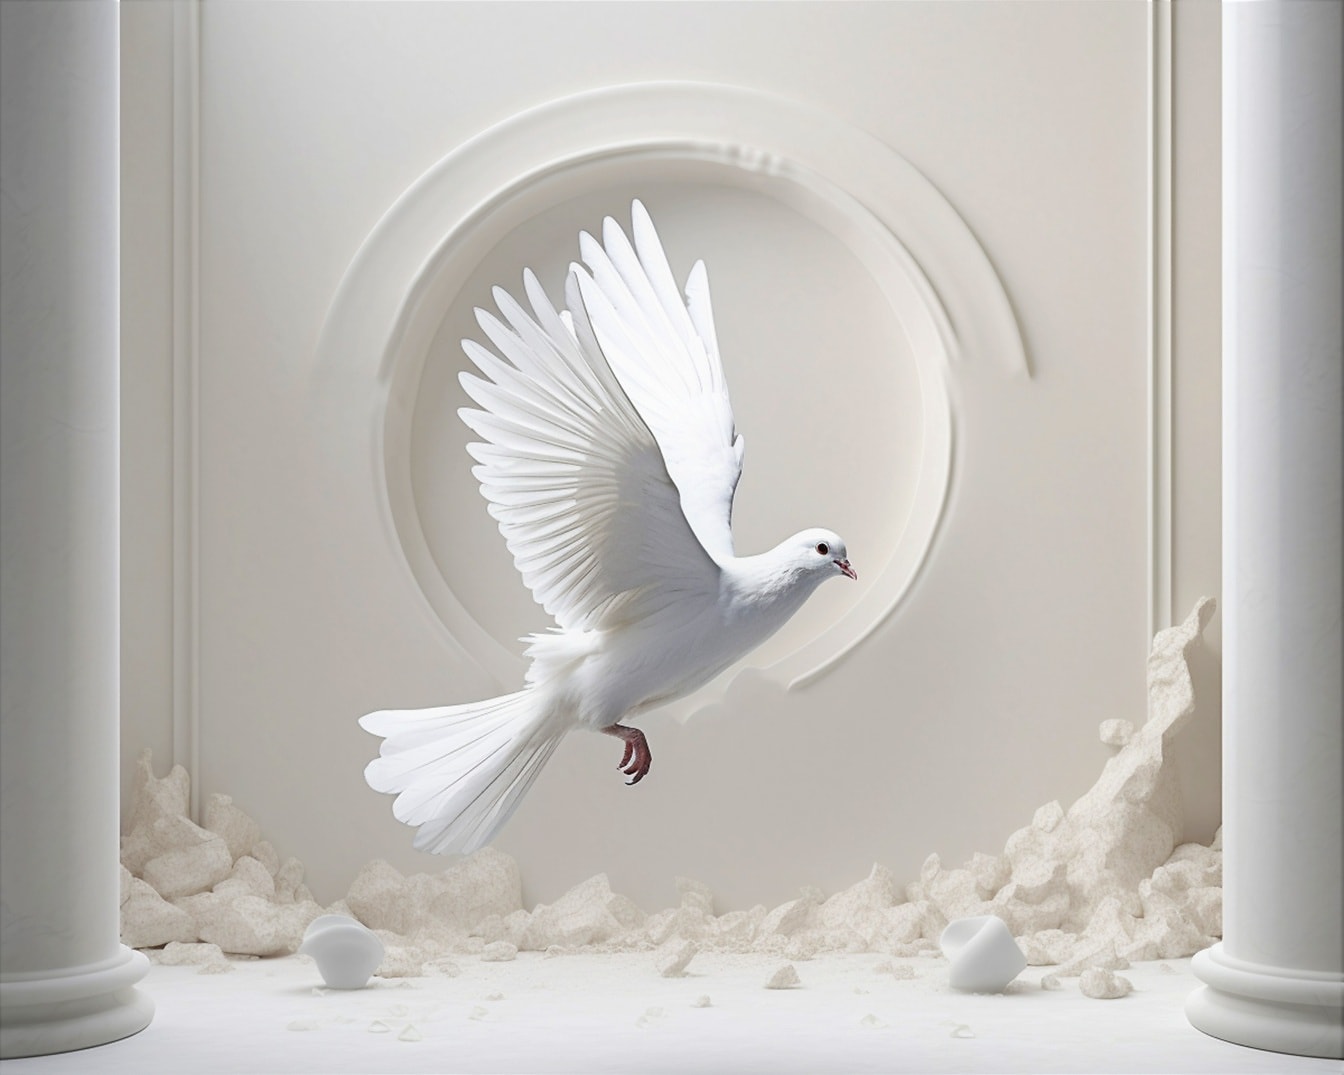 Bijeli golub leti unutar napuštene sobe